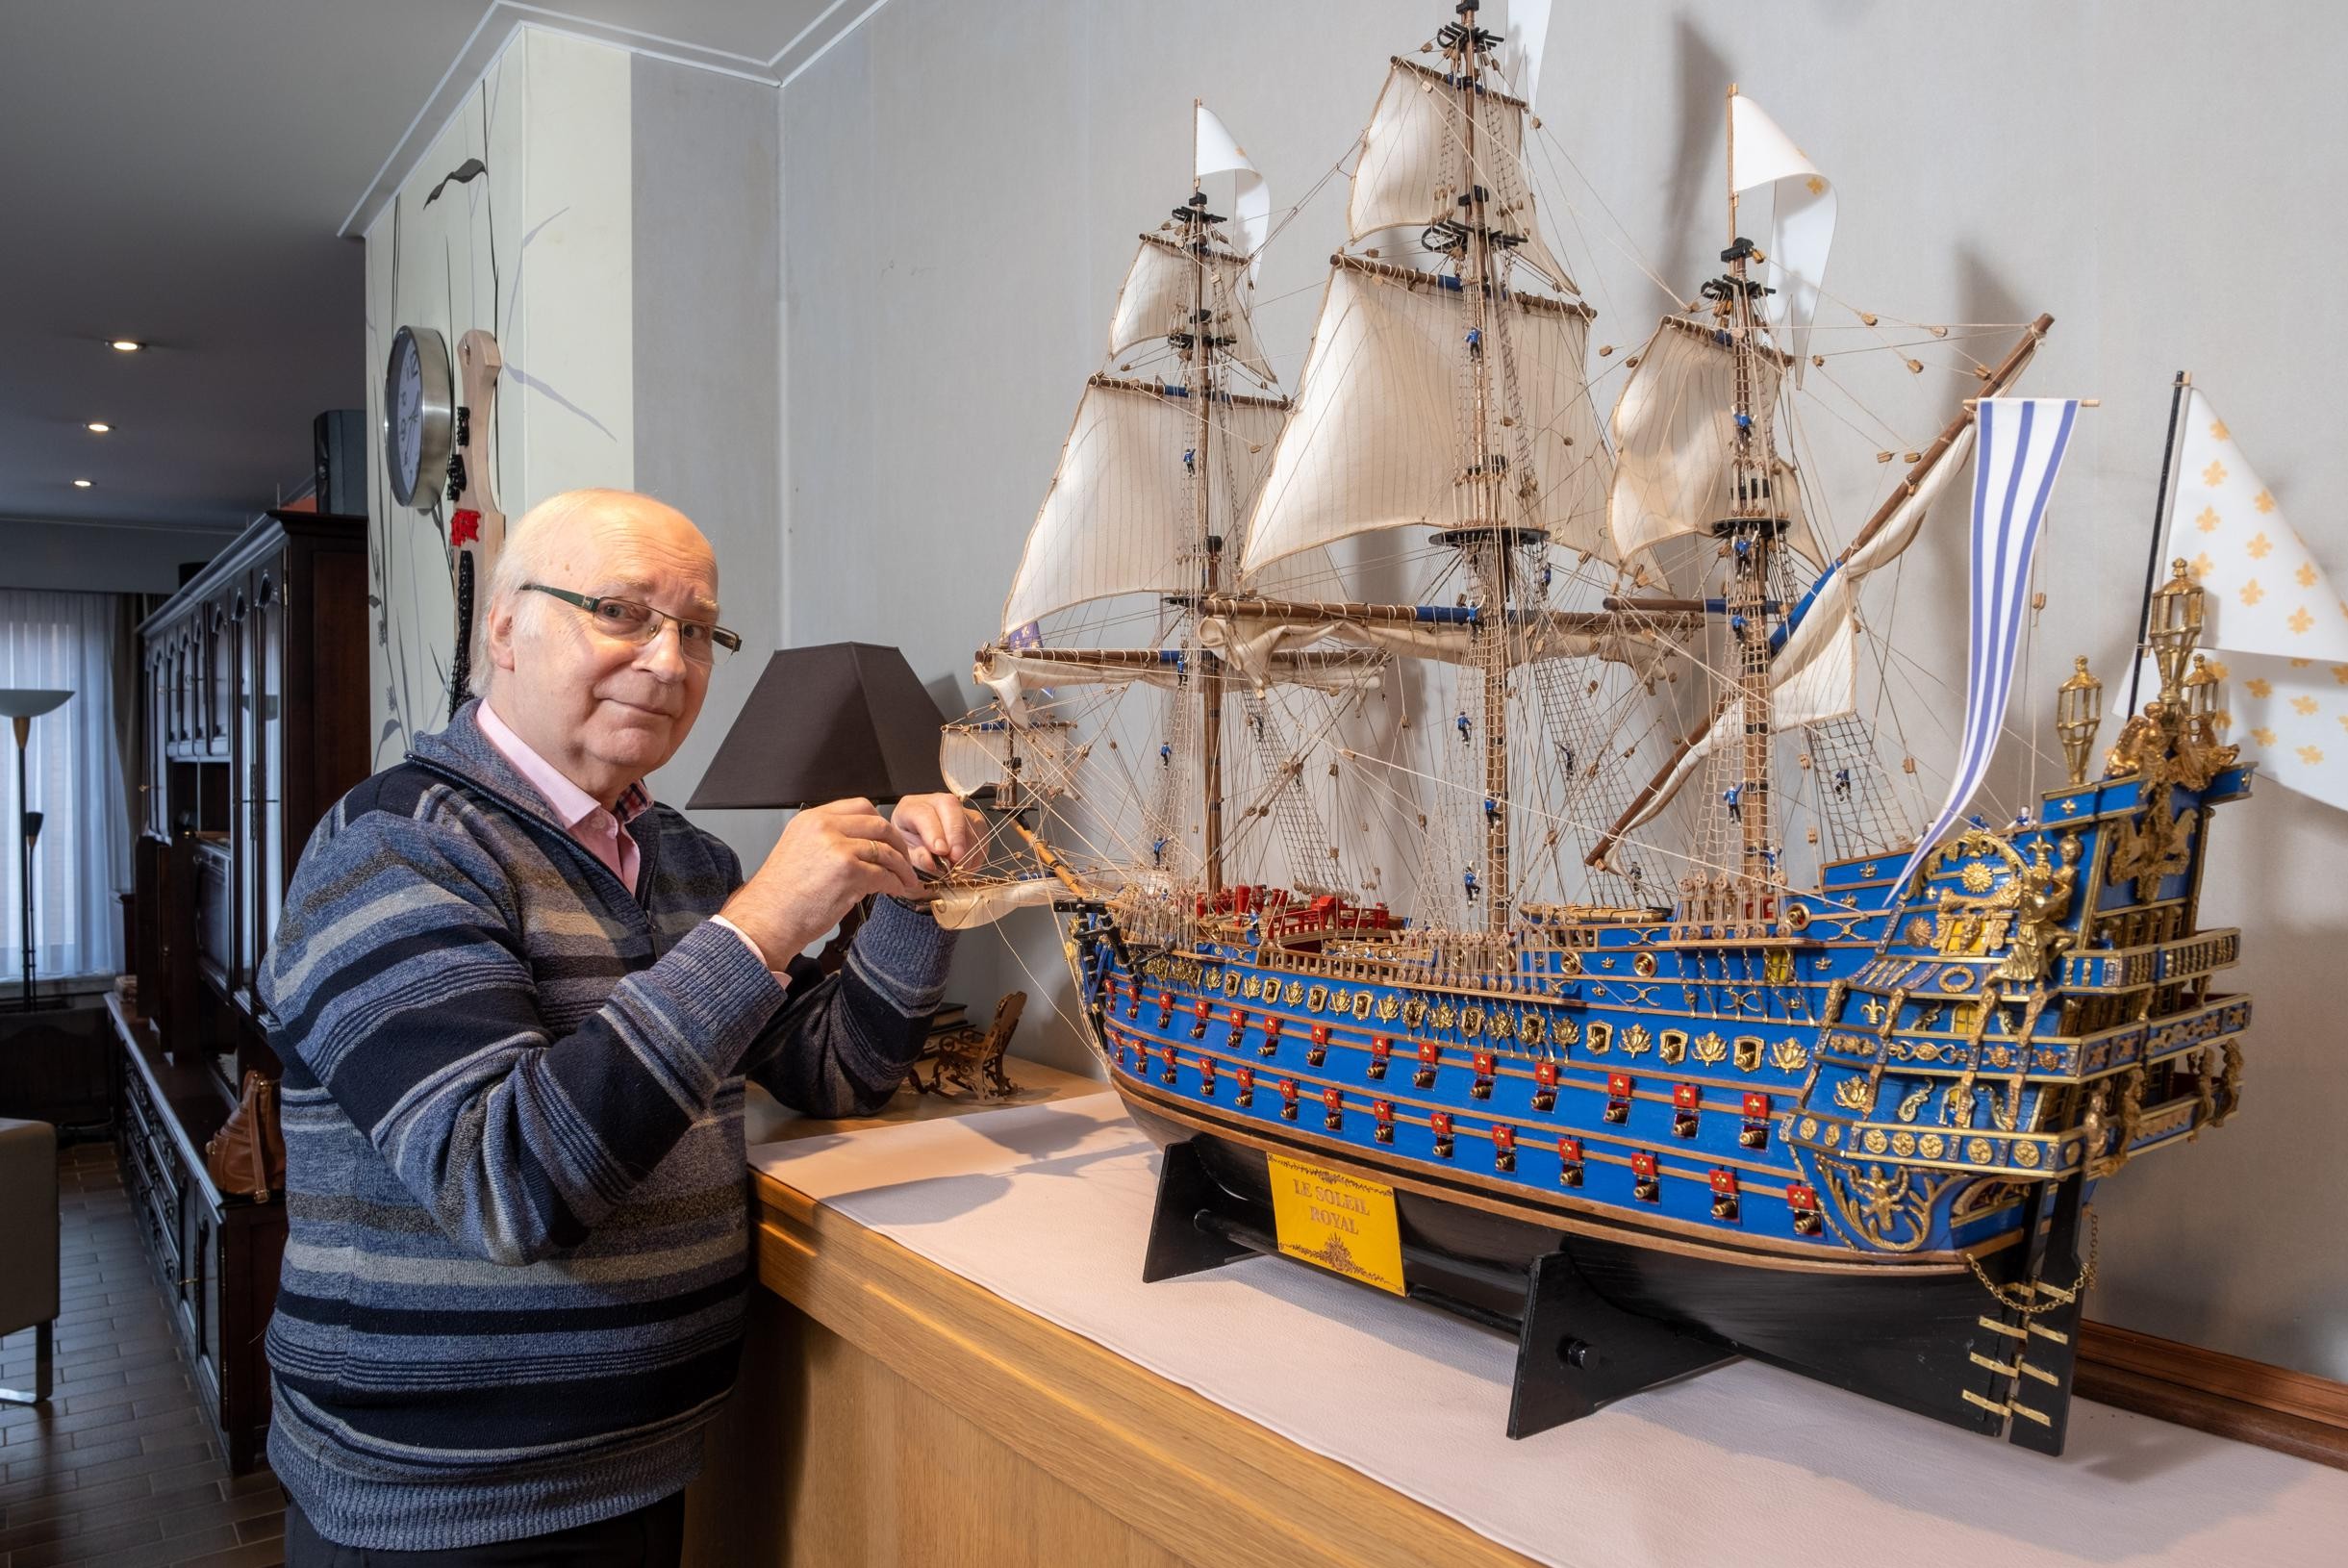 Krijt beschaving bereiden Modelbouwer Jack bouwt schip van Louis XIV na: “Fier op het resultaat, na  2,5 jaar bouwen” (Hove) | Gazet van Antwerpen Mobile